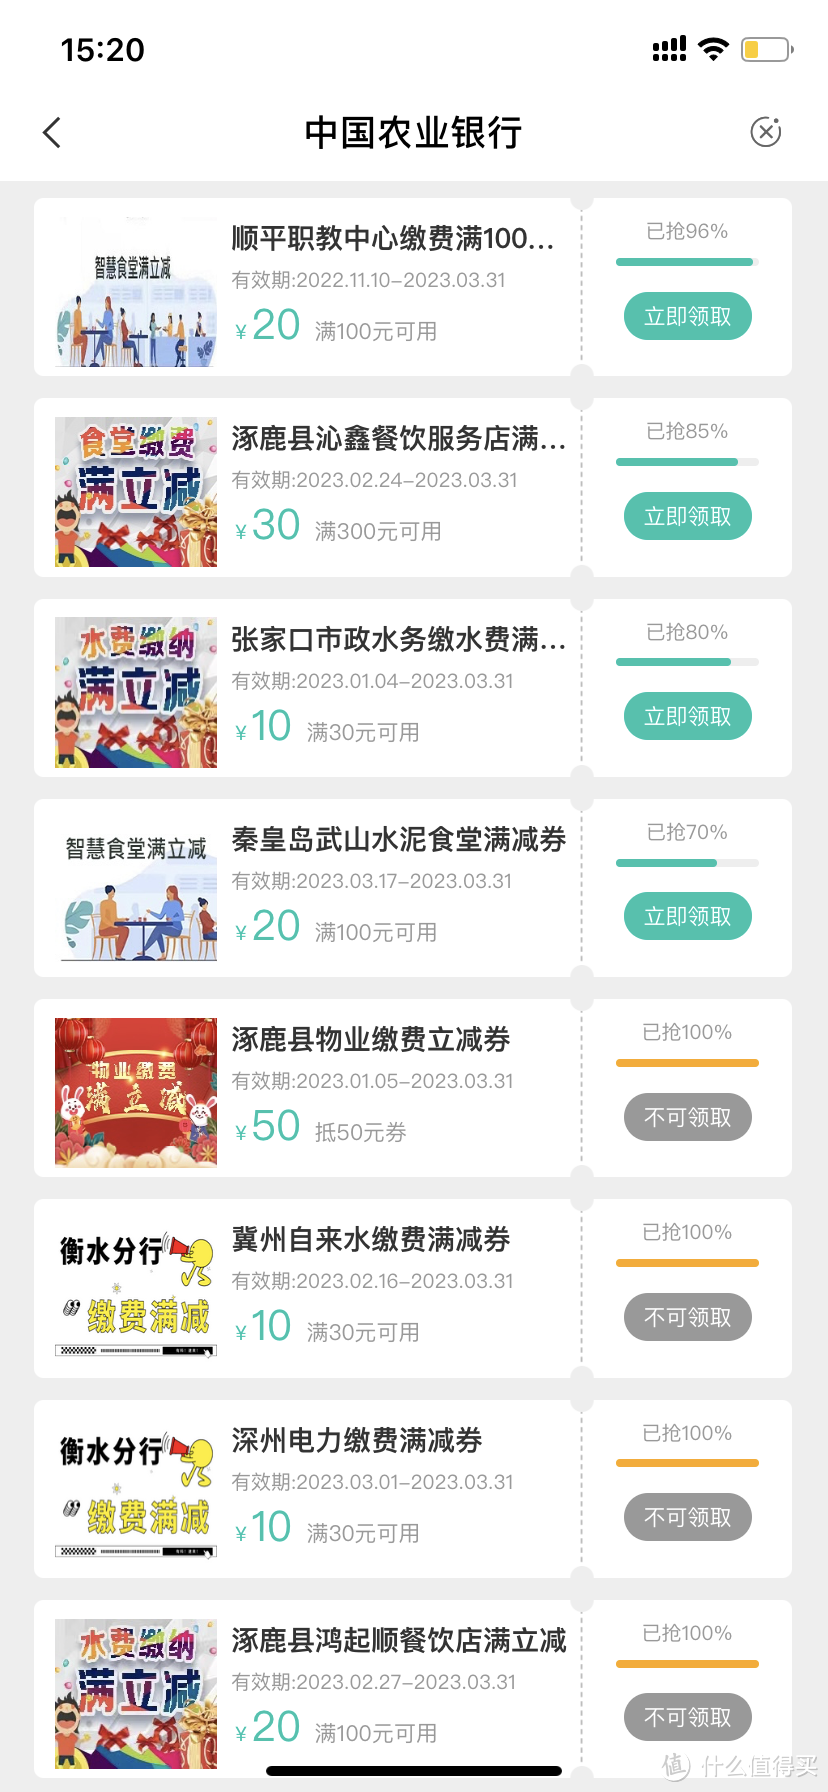 中国农业银行app每个月都可以抽奖